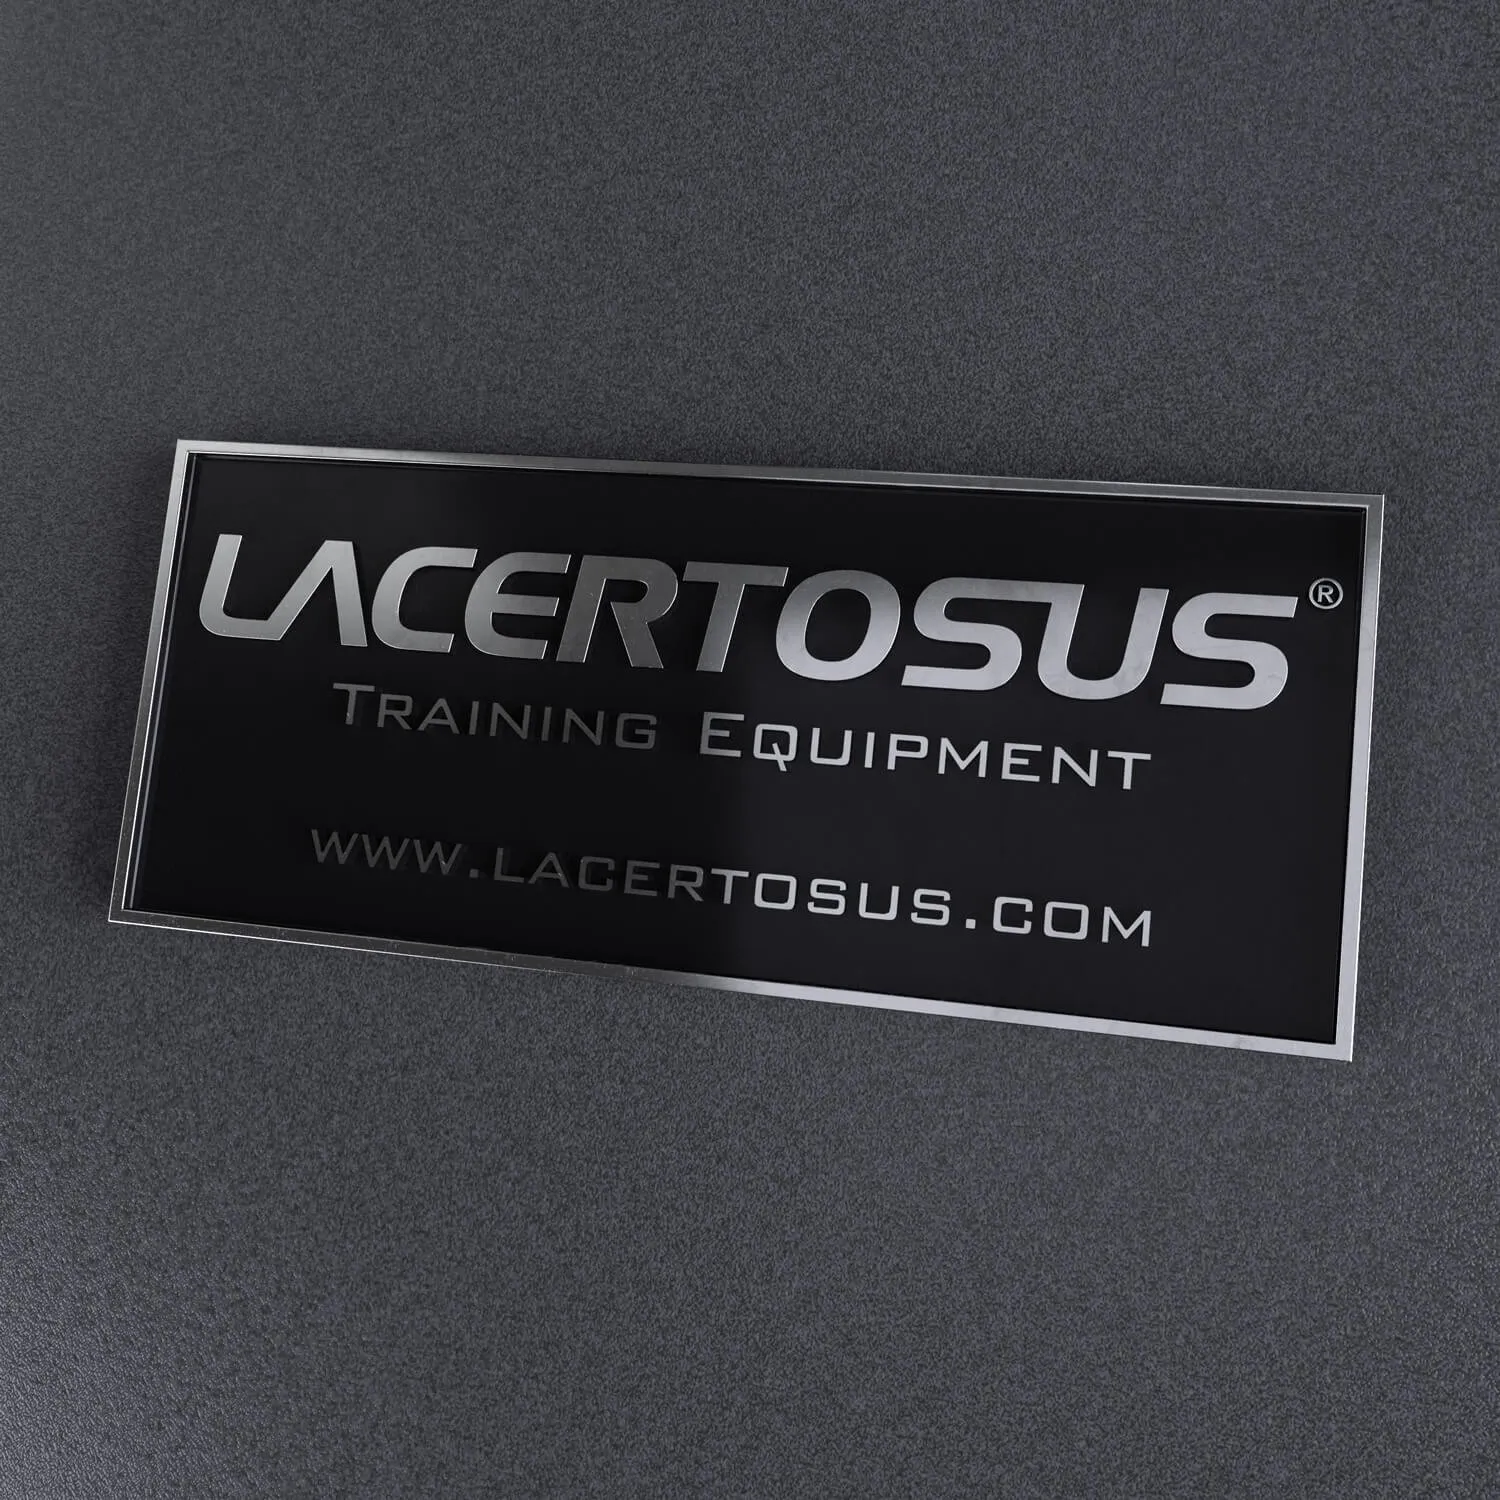 Lacertosus - Innovative Performance Equipment - Lacertosus